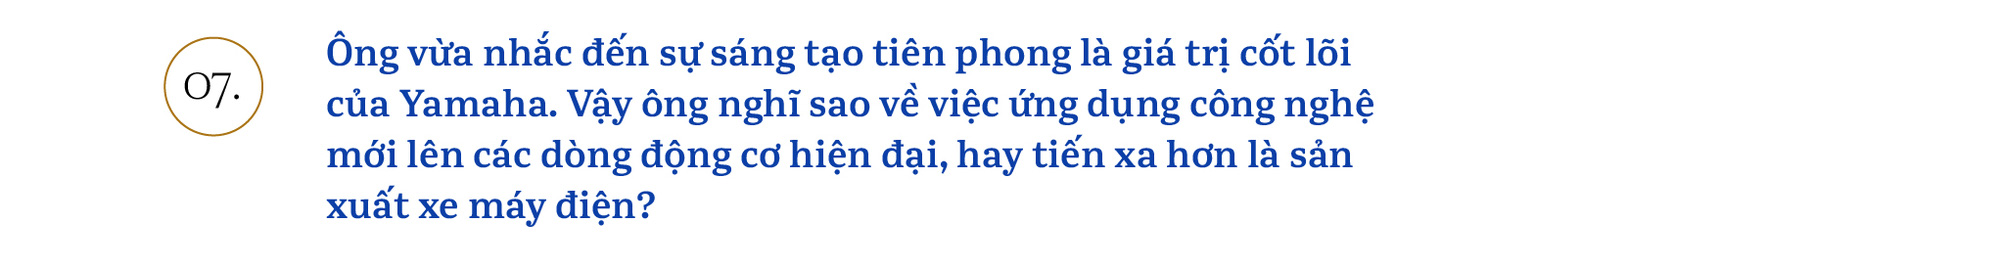 Chủ tịch Yamaha Việt Nam: ‘Chúng tôi sẽ khơi dậy khách hàng trẻ tìm được bản ngã của chính mình’ - Ảnh 13.